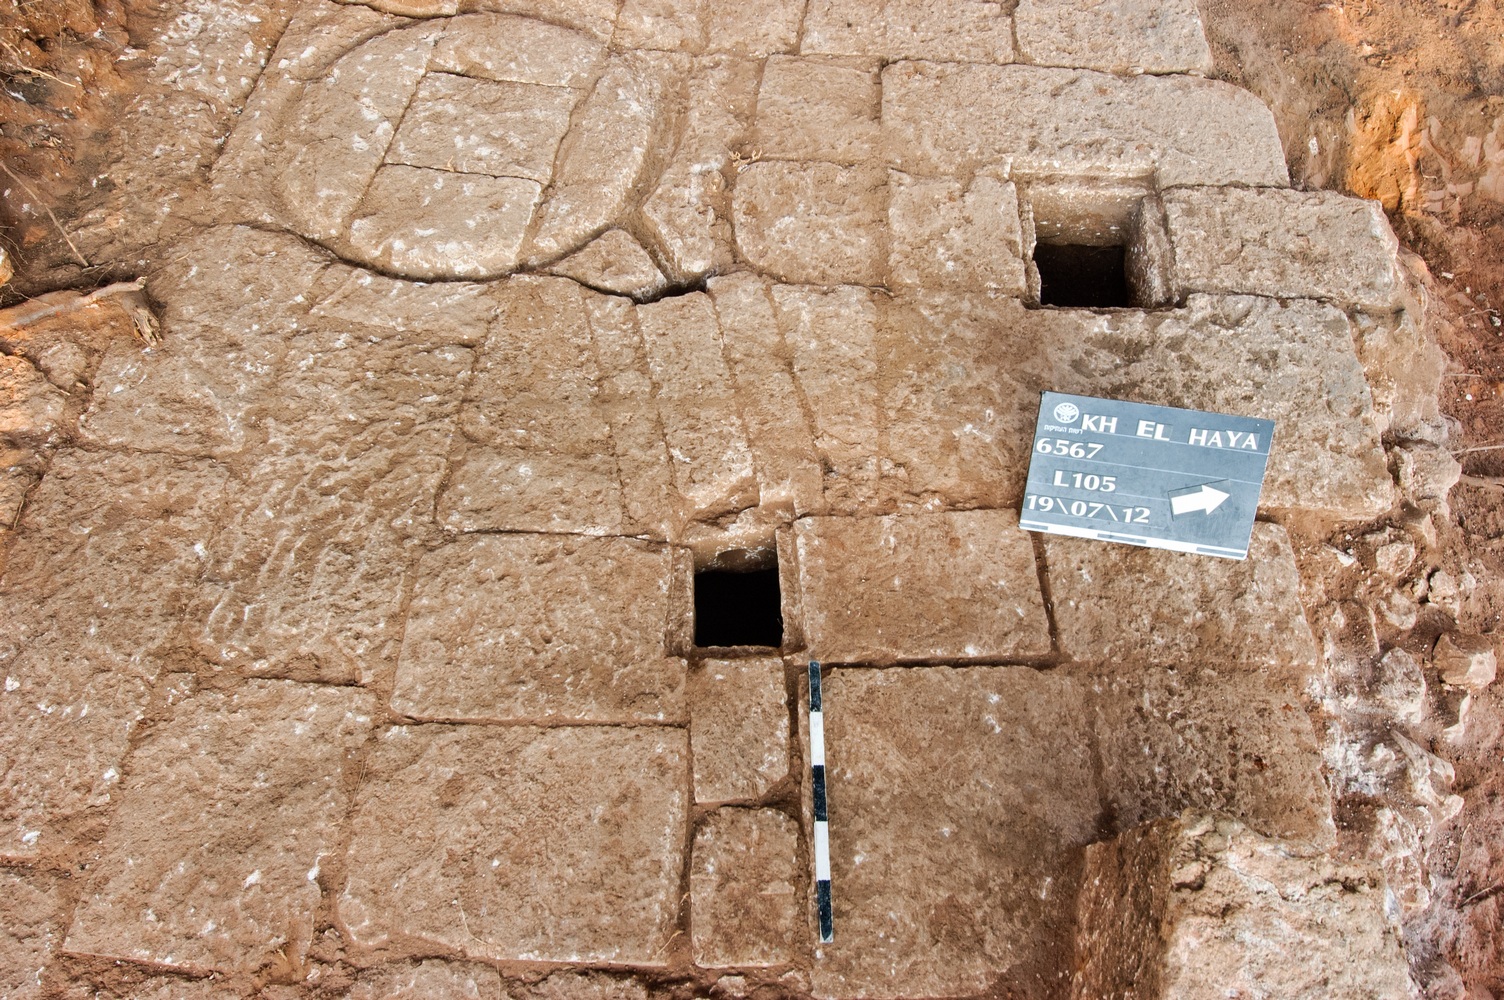 בית הבד שנחשף בחפירות בהוד השרון - צילום: דוראר מסראווה, באדיבות רשות העתיקות